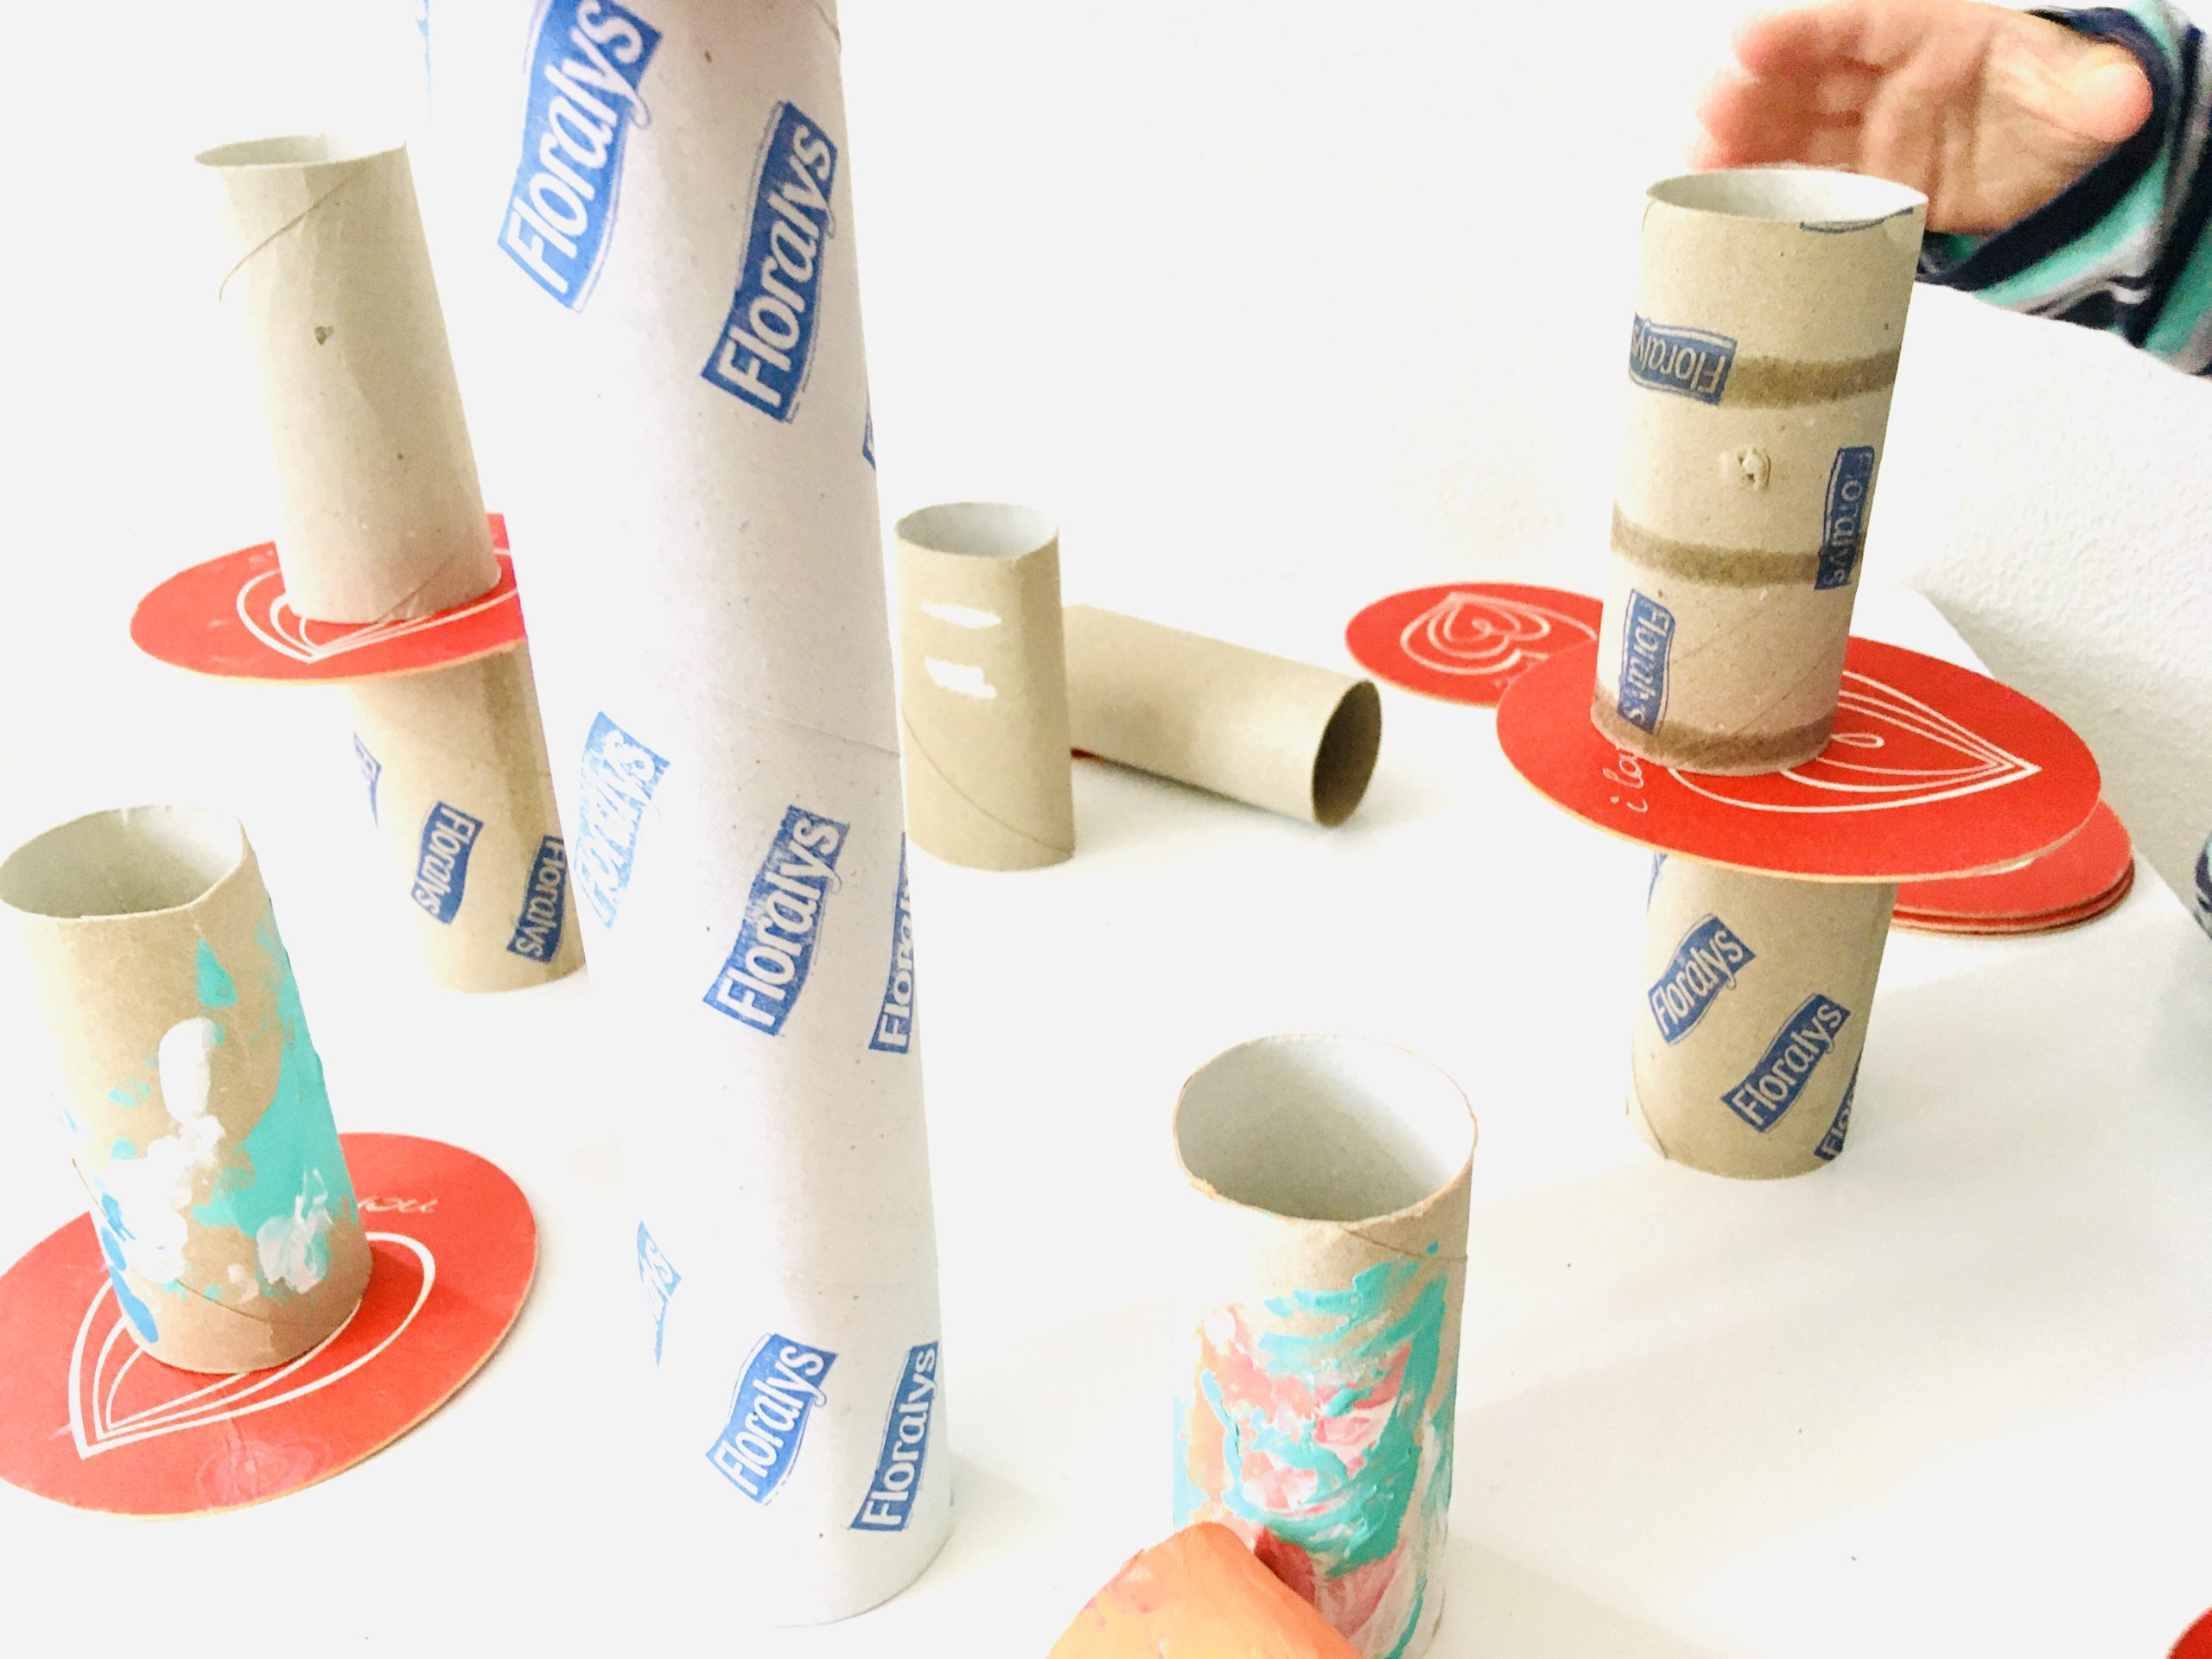 Bild zum Schritt 6 für das Bastel- und DIY-Abenteuer für Kinder: 'Stellt die Papprollen auf, lasst dazwischen immer etwas Platz, so...'